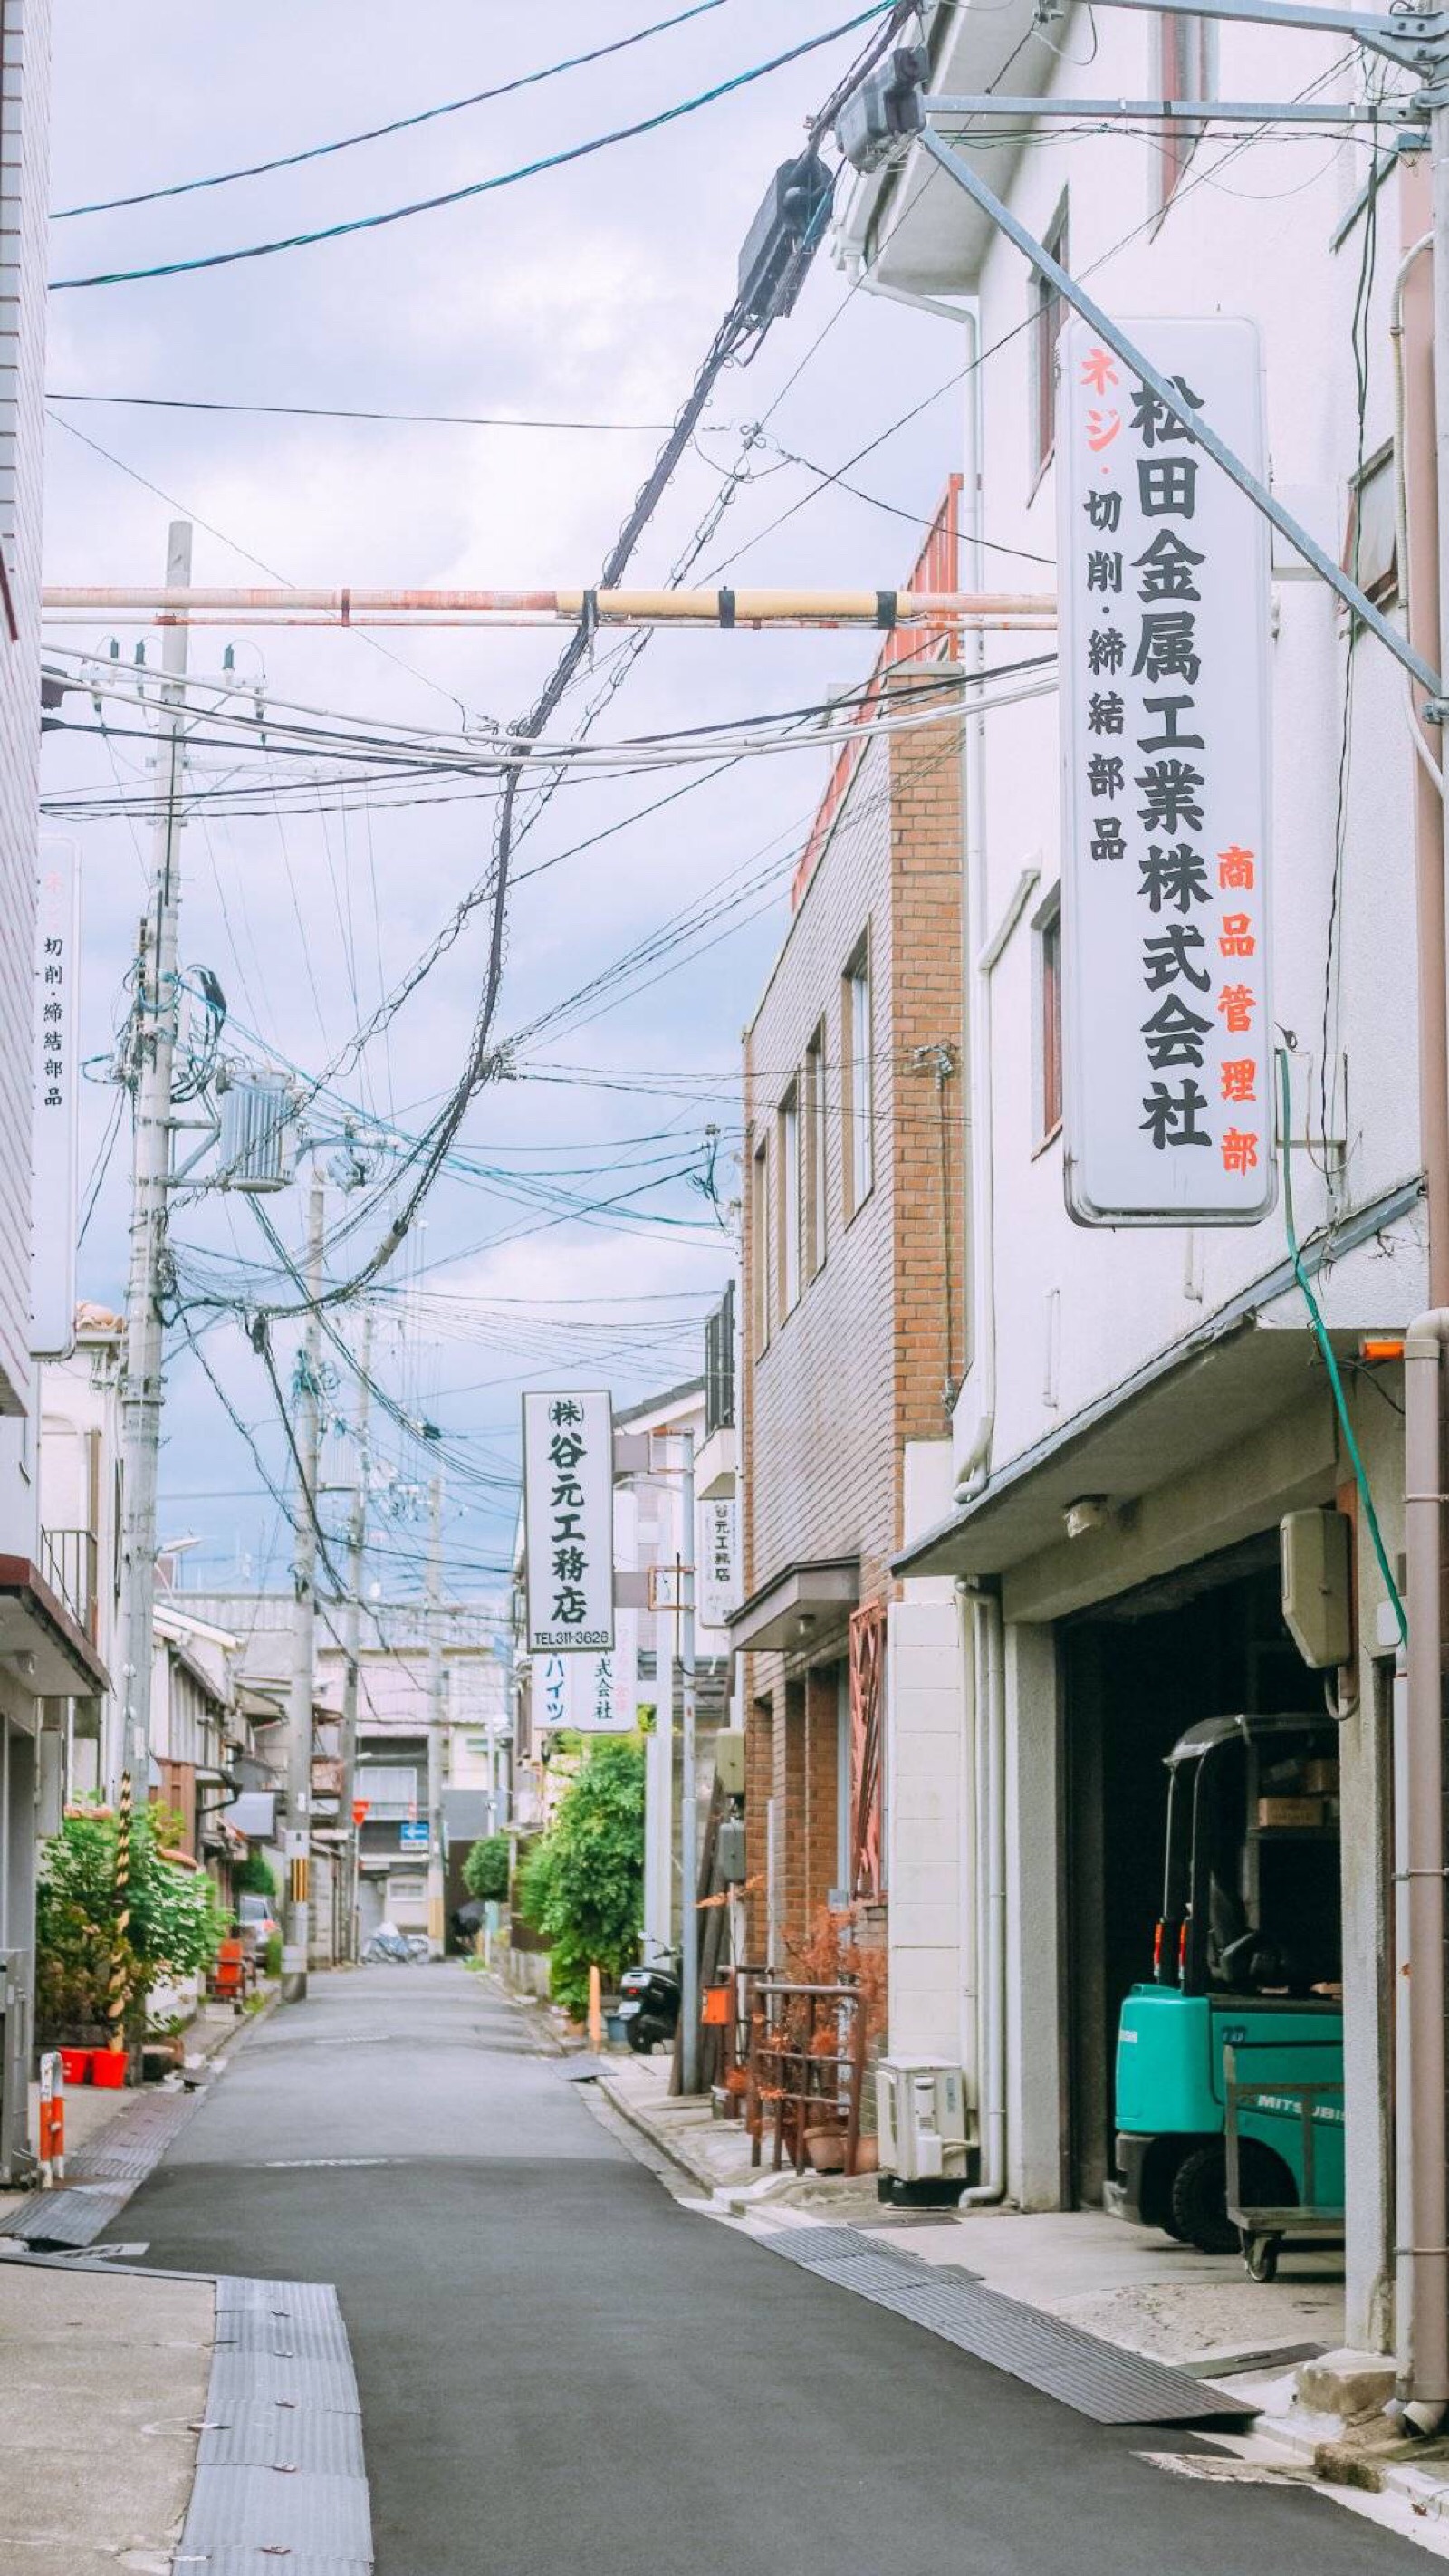 日本街景 - 堆糖,美图壁纸兴趣社区